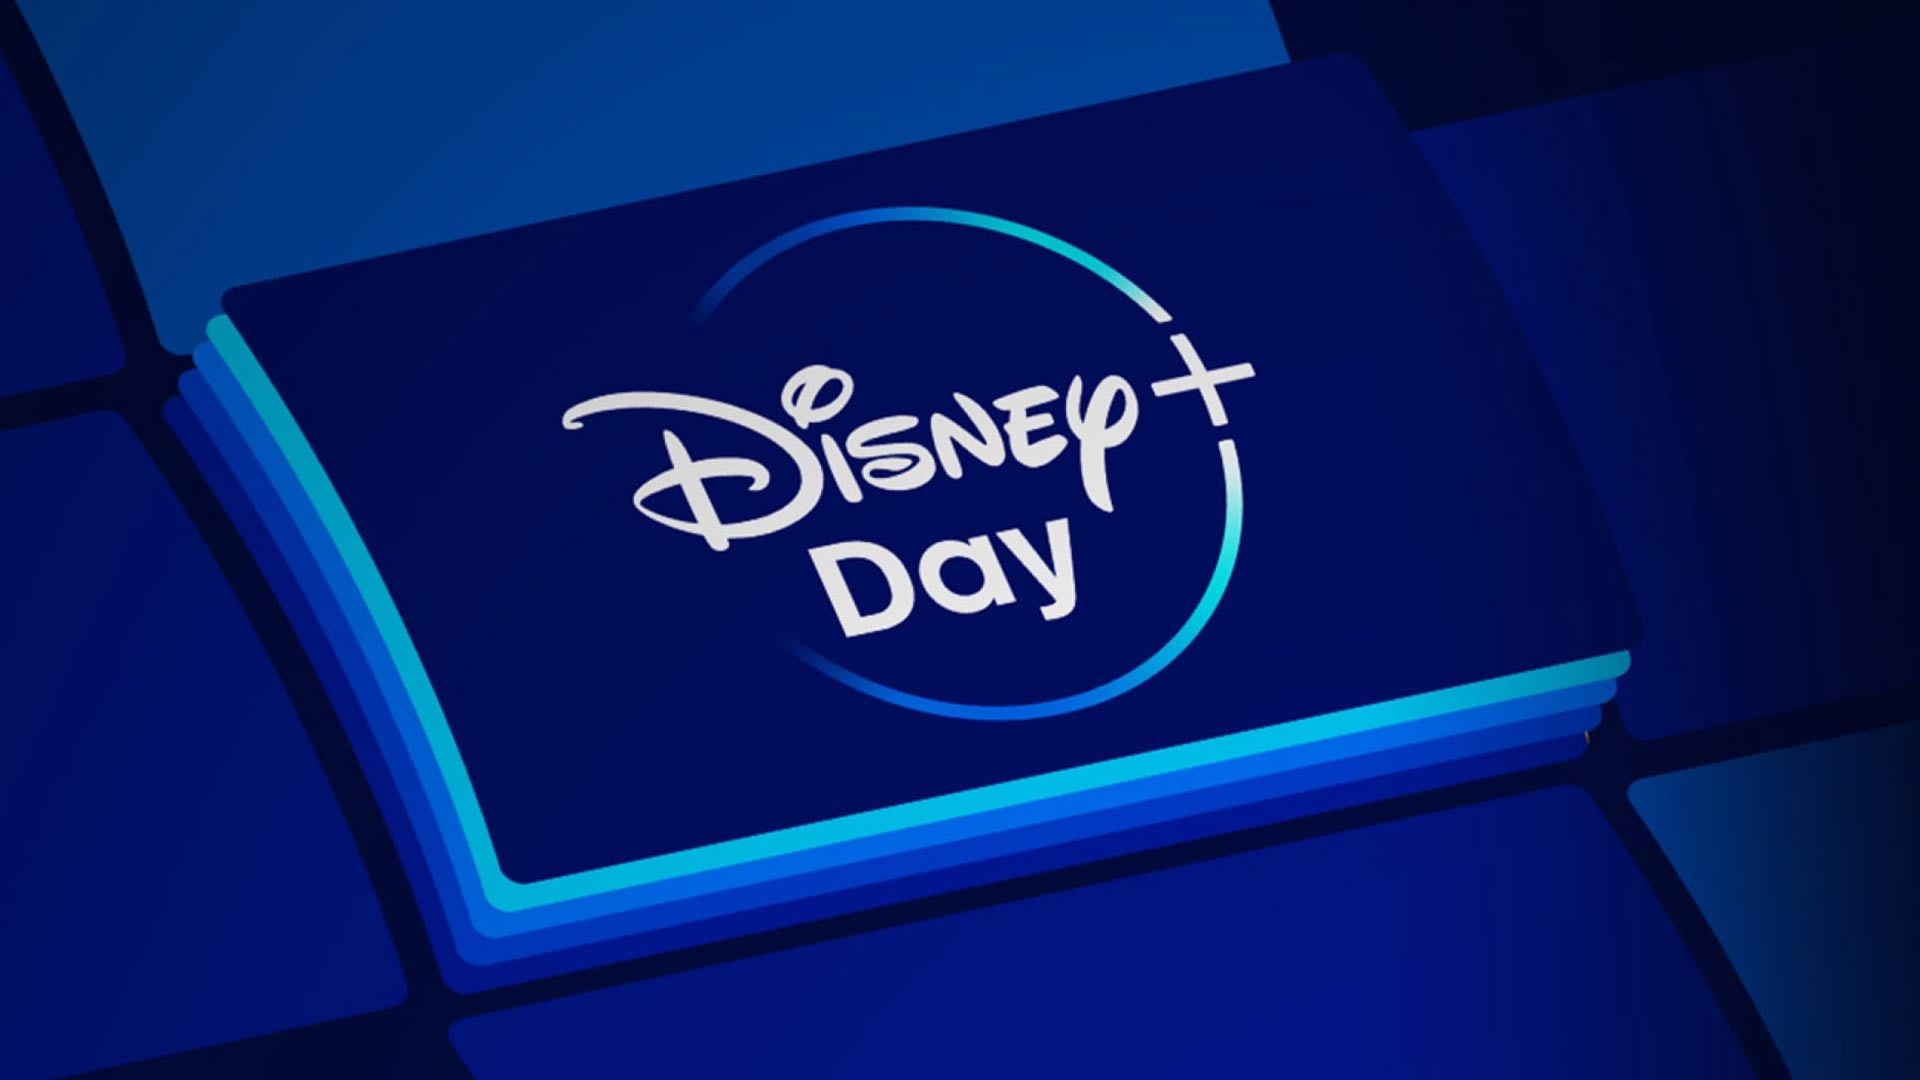 Disney+ Day: Jetzt 1 Monat Disney Plus für nur 1,99 Euro abonnieren